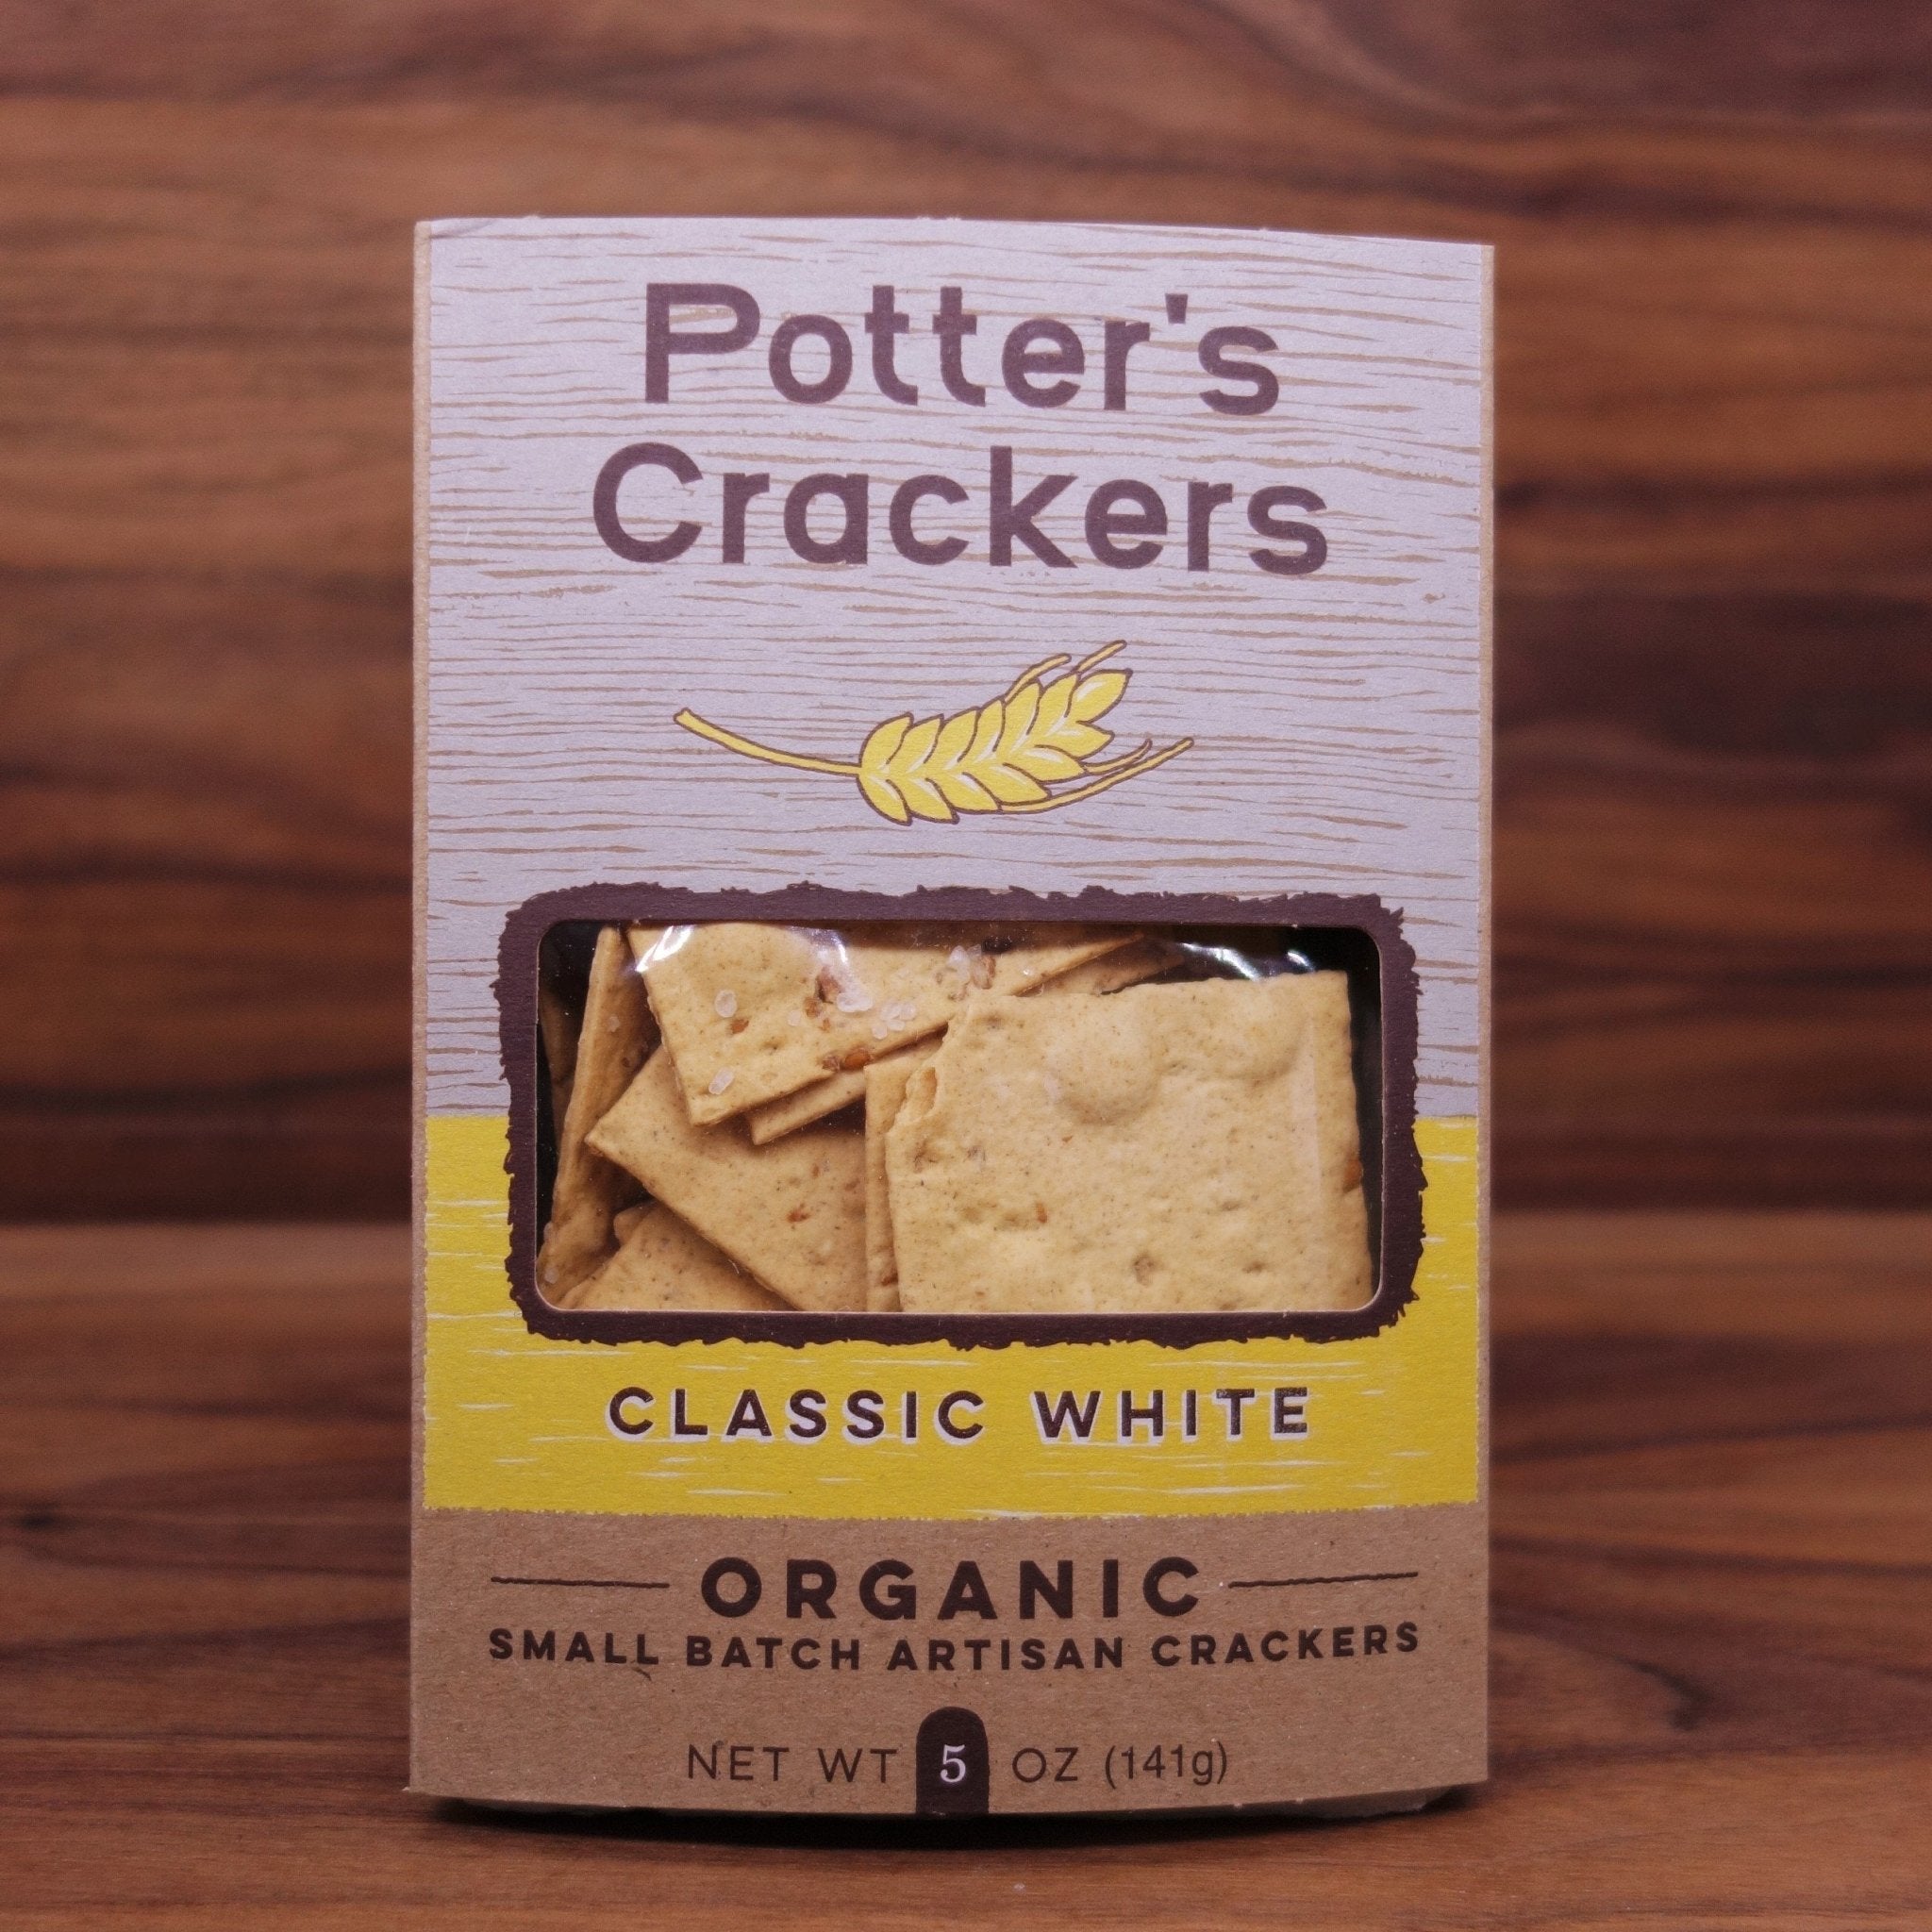 Potters Crackers - Wisconsin's Original Organic Cracker Co.